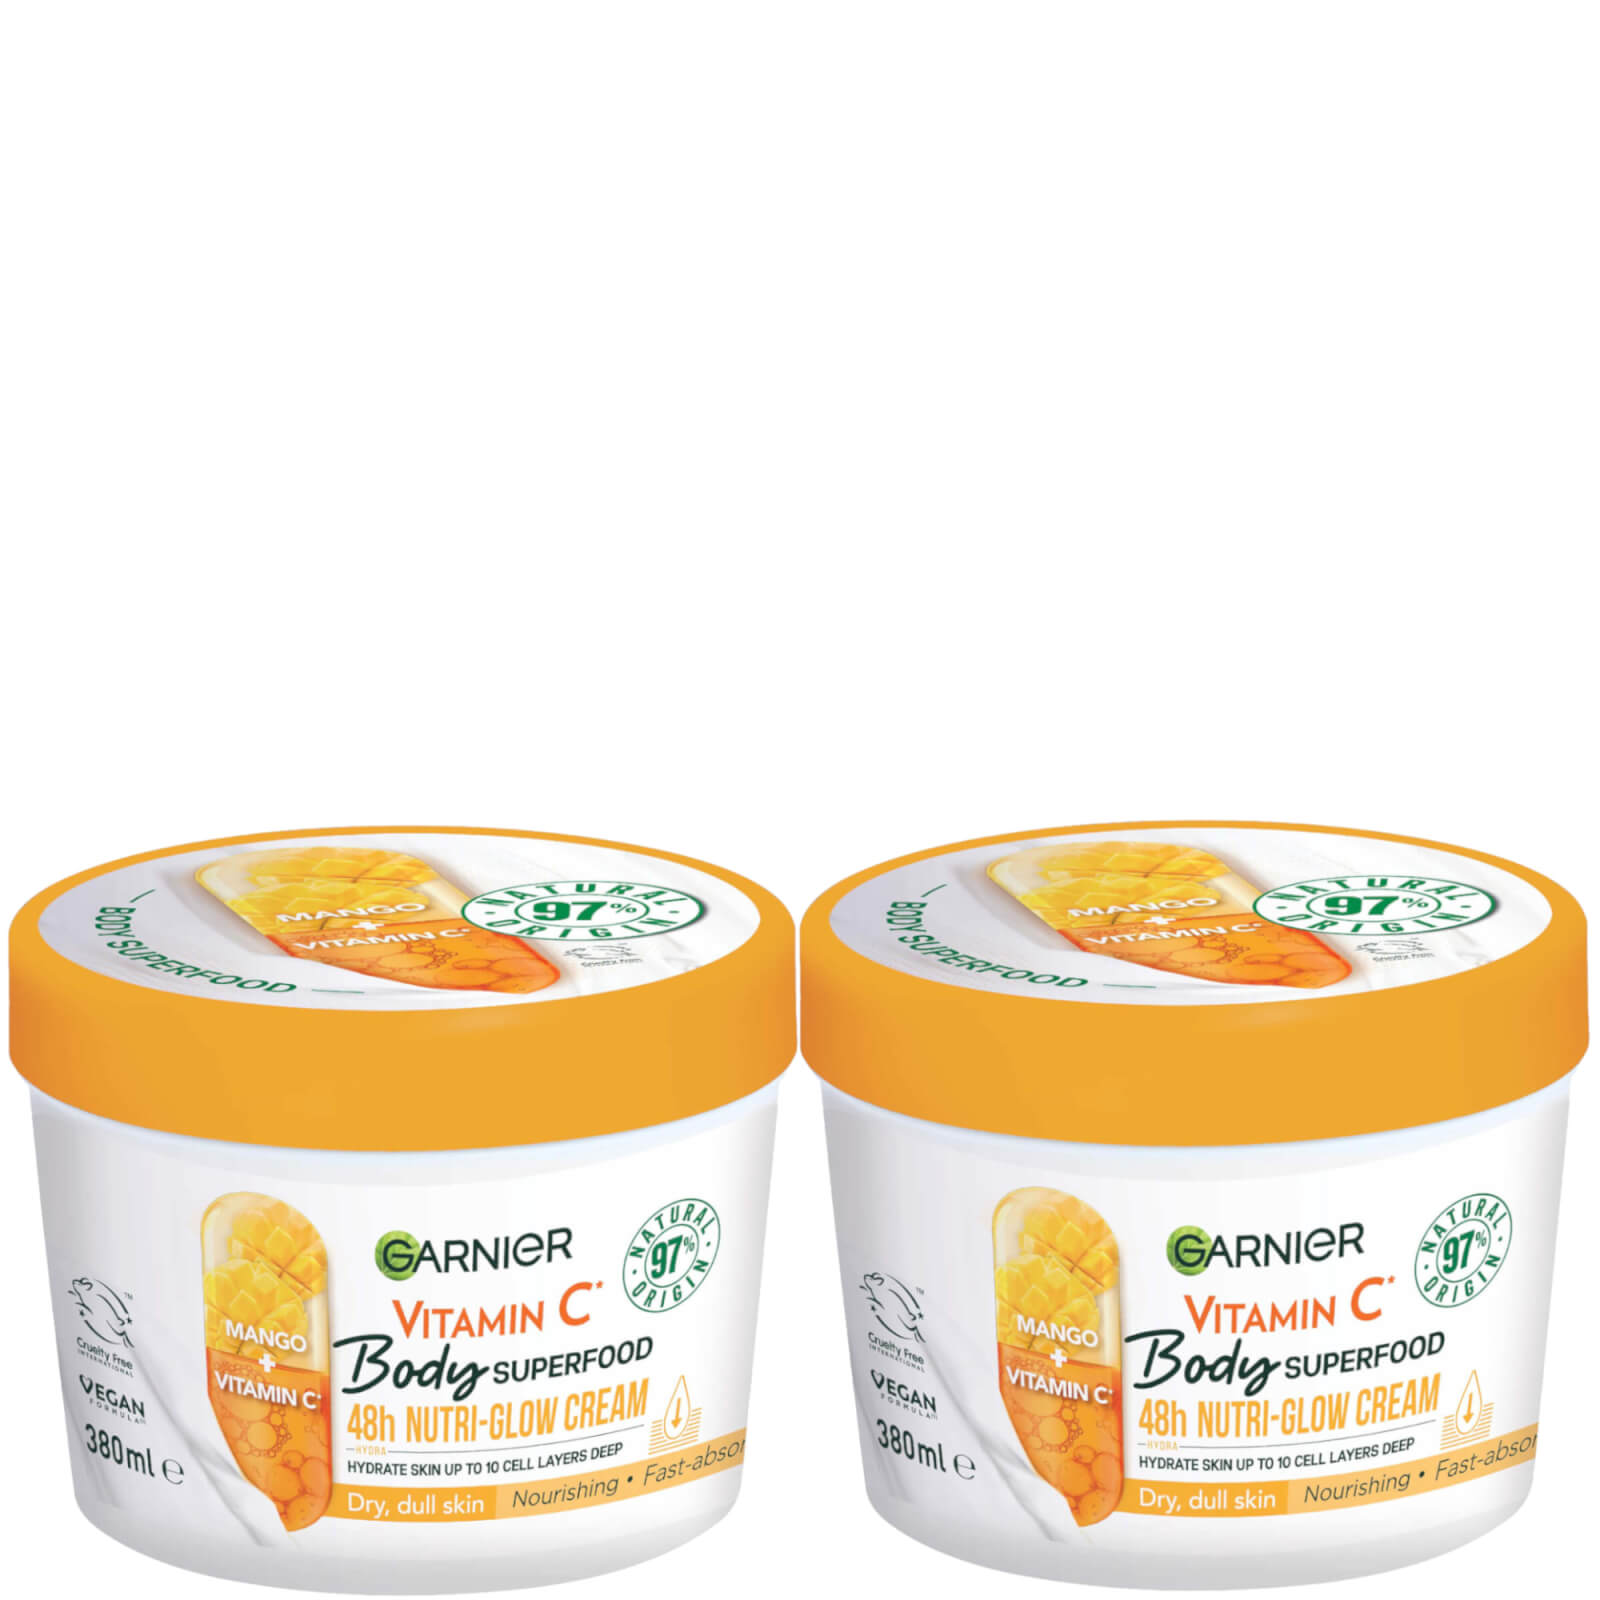 Garnier Body Superfood Cream Vitamin C And Mango Duo